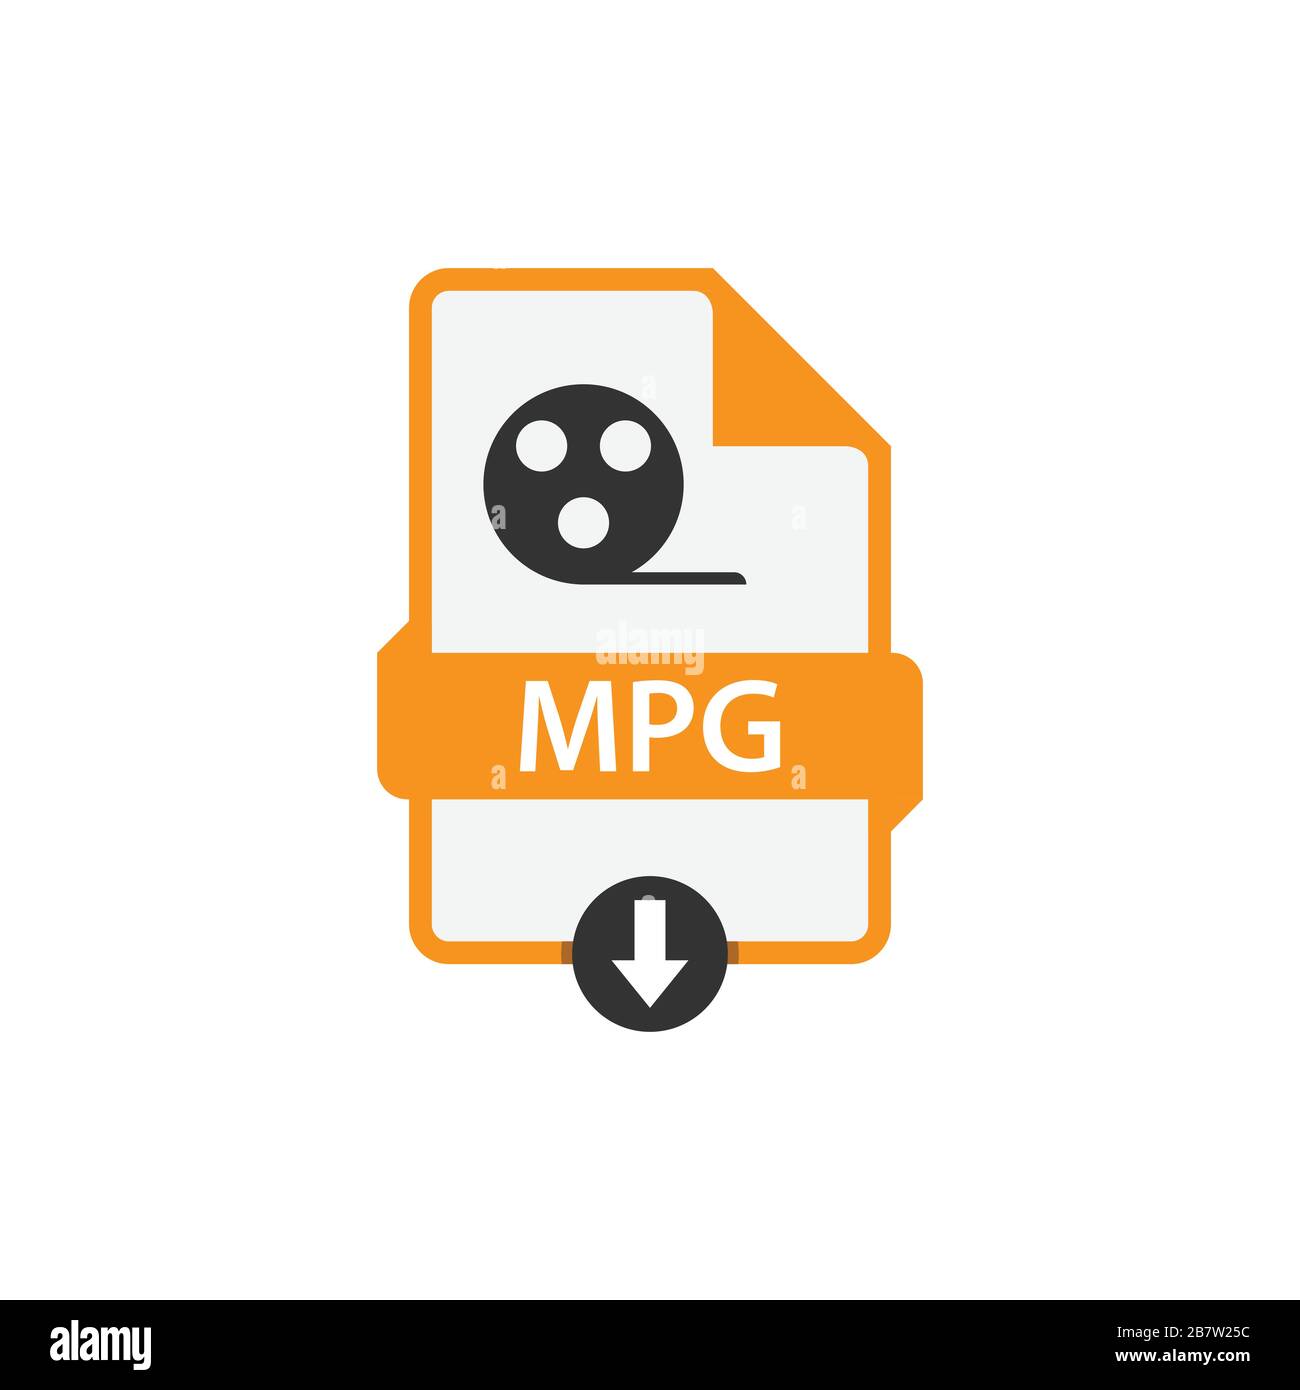 MPG scarica immagine vettoriale formato file video. Immagine DEL FILE MPG immagine grafica vettoriale video Illustrazione Vettoriale